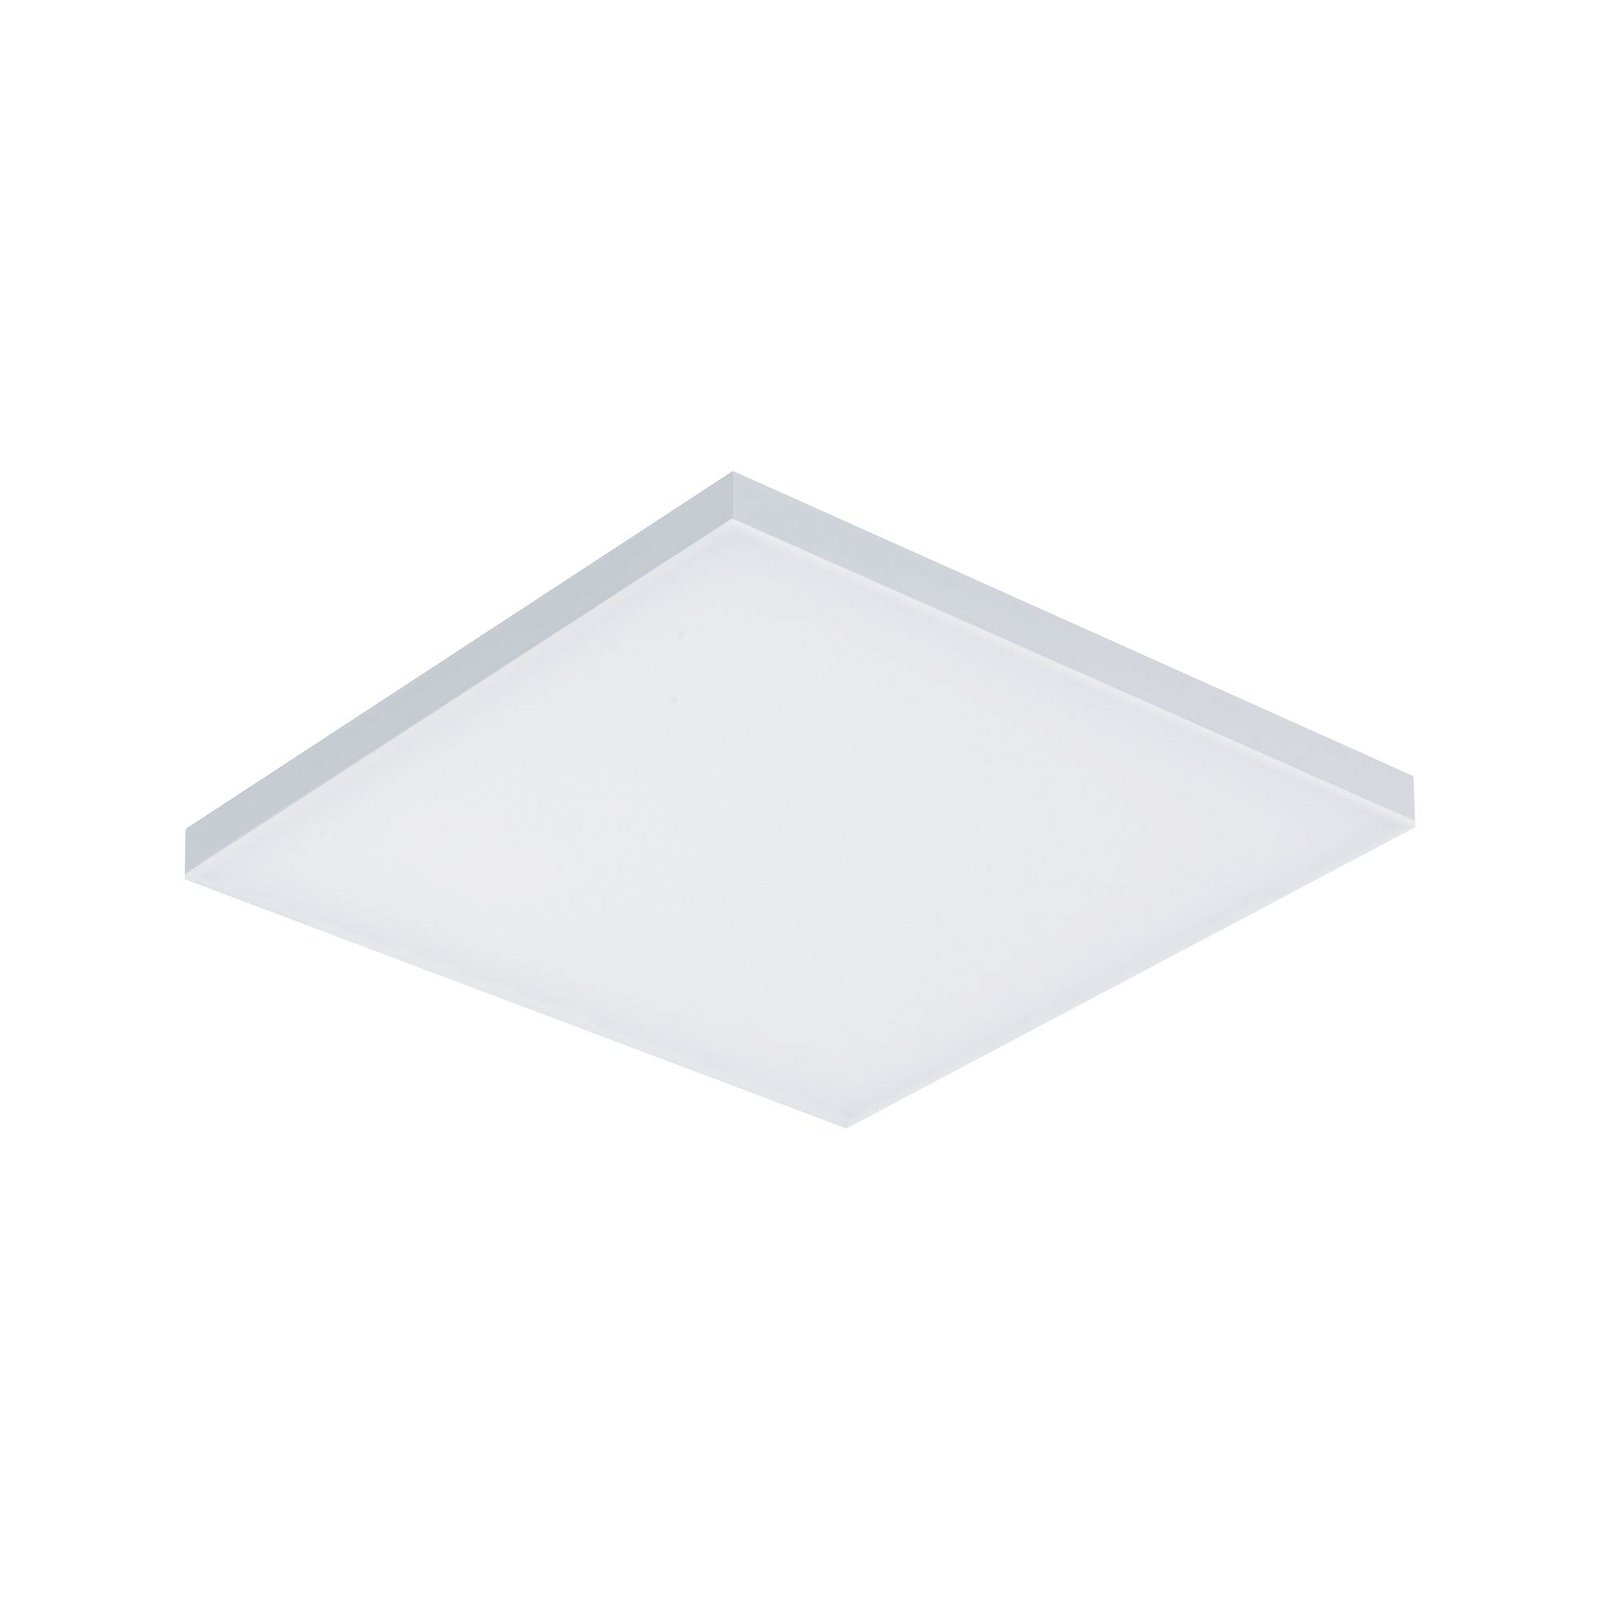 LED Panel 3-Step-Dim Velora eckig 295x295mm 17W 1600lm 3000K Weiß matt dimmbar